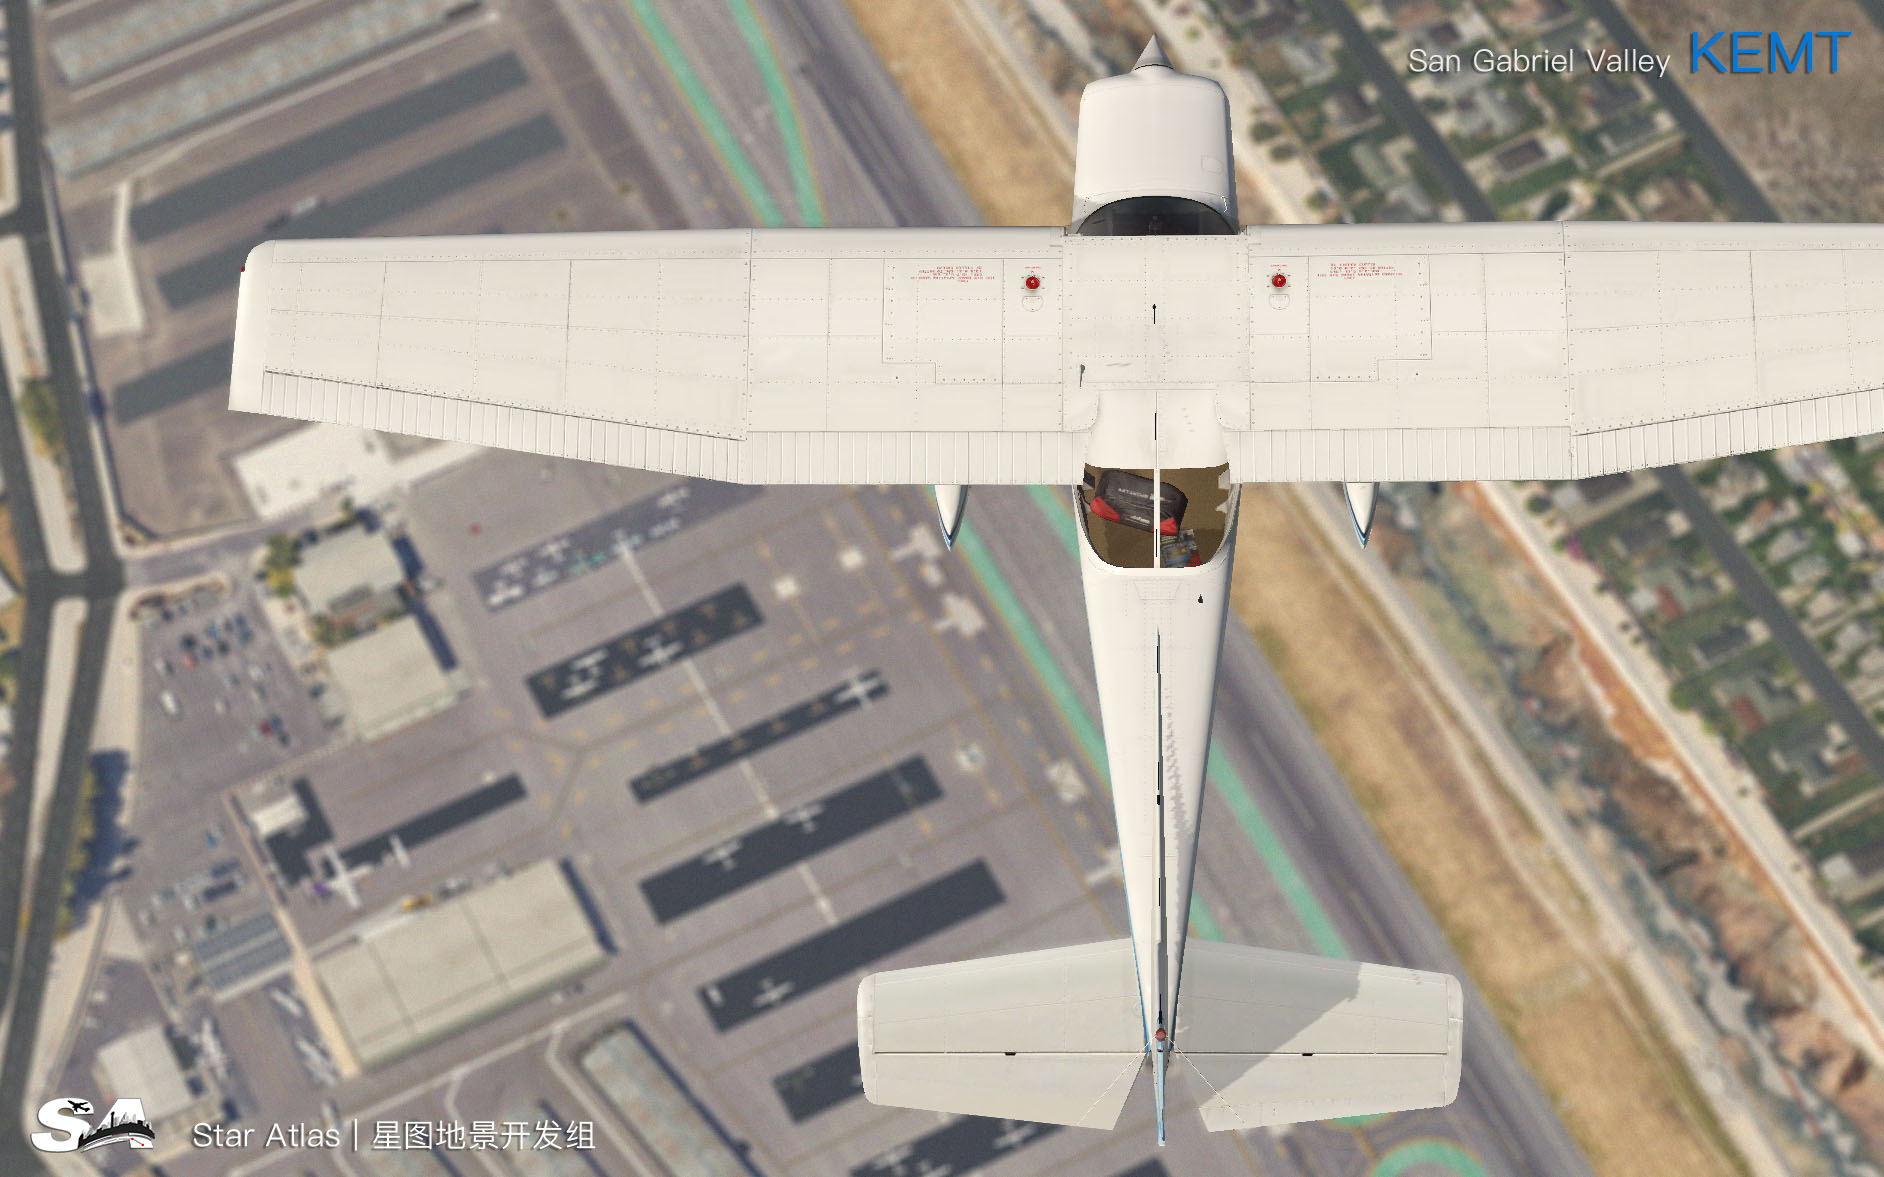 【X-Plane】KEMT-圣盖博谷机场 HD 1.0-386 